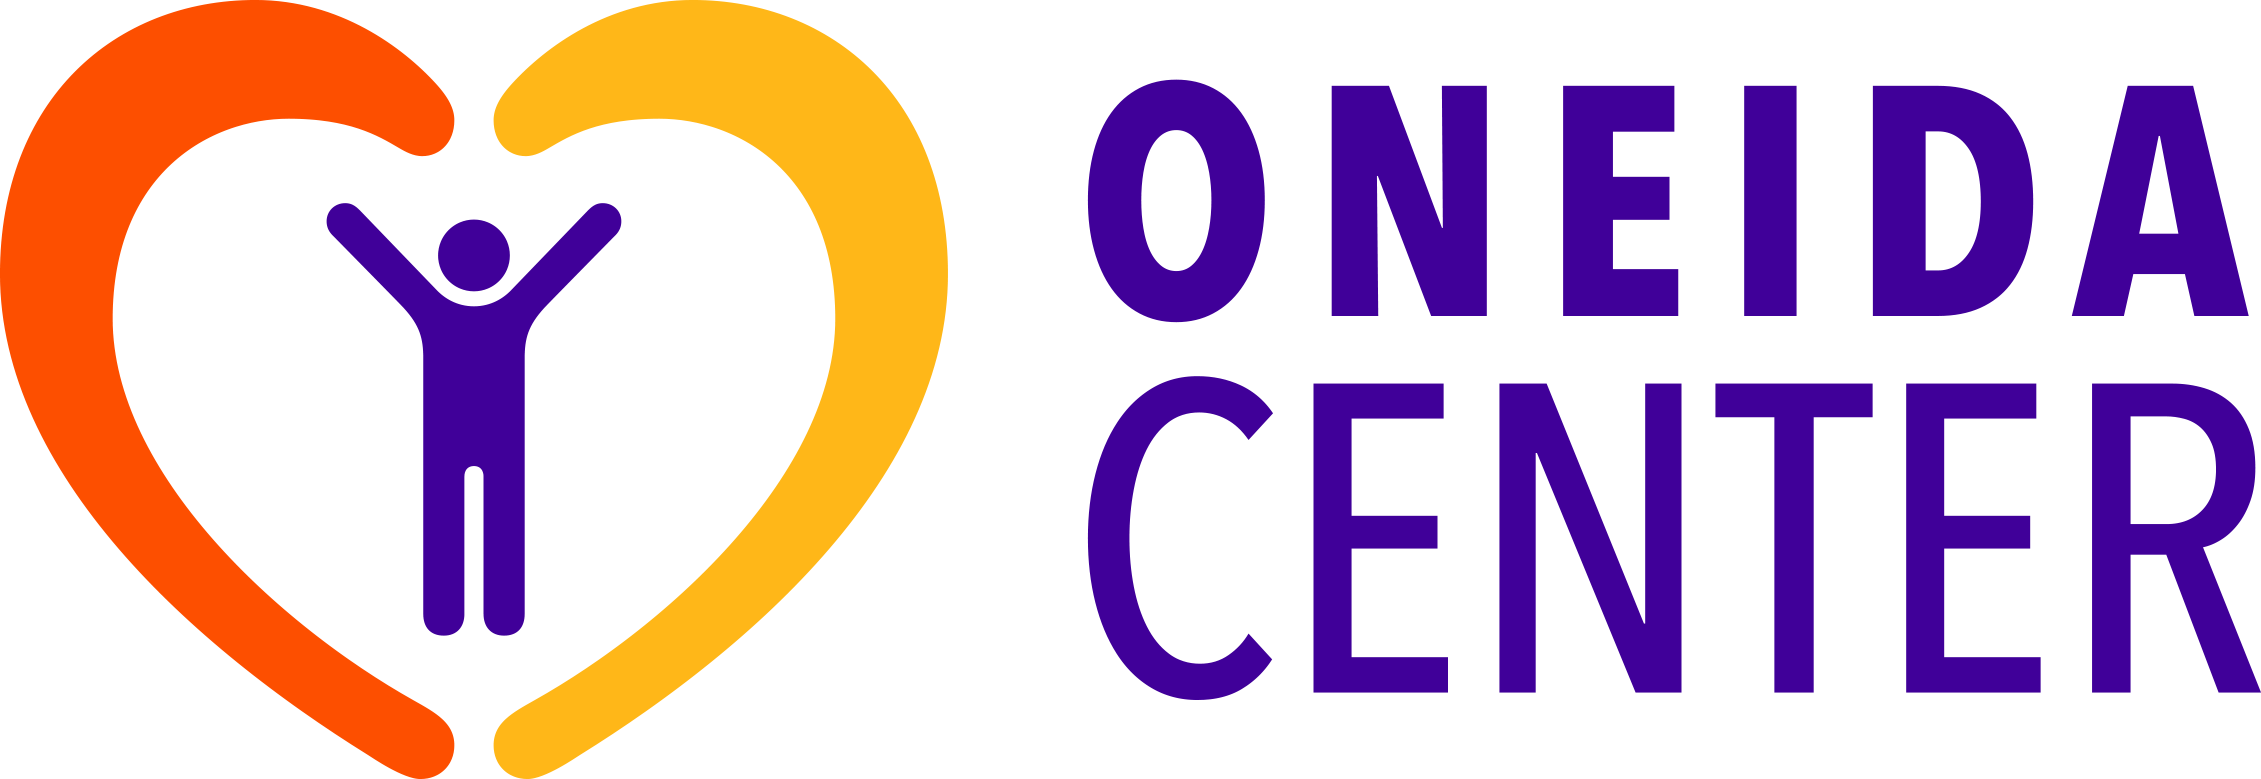 Oneida Center Oneida Center Logo - Health Care (2261x779)